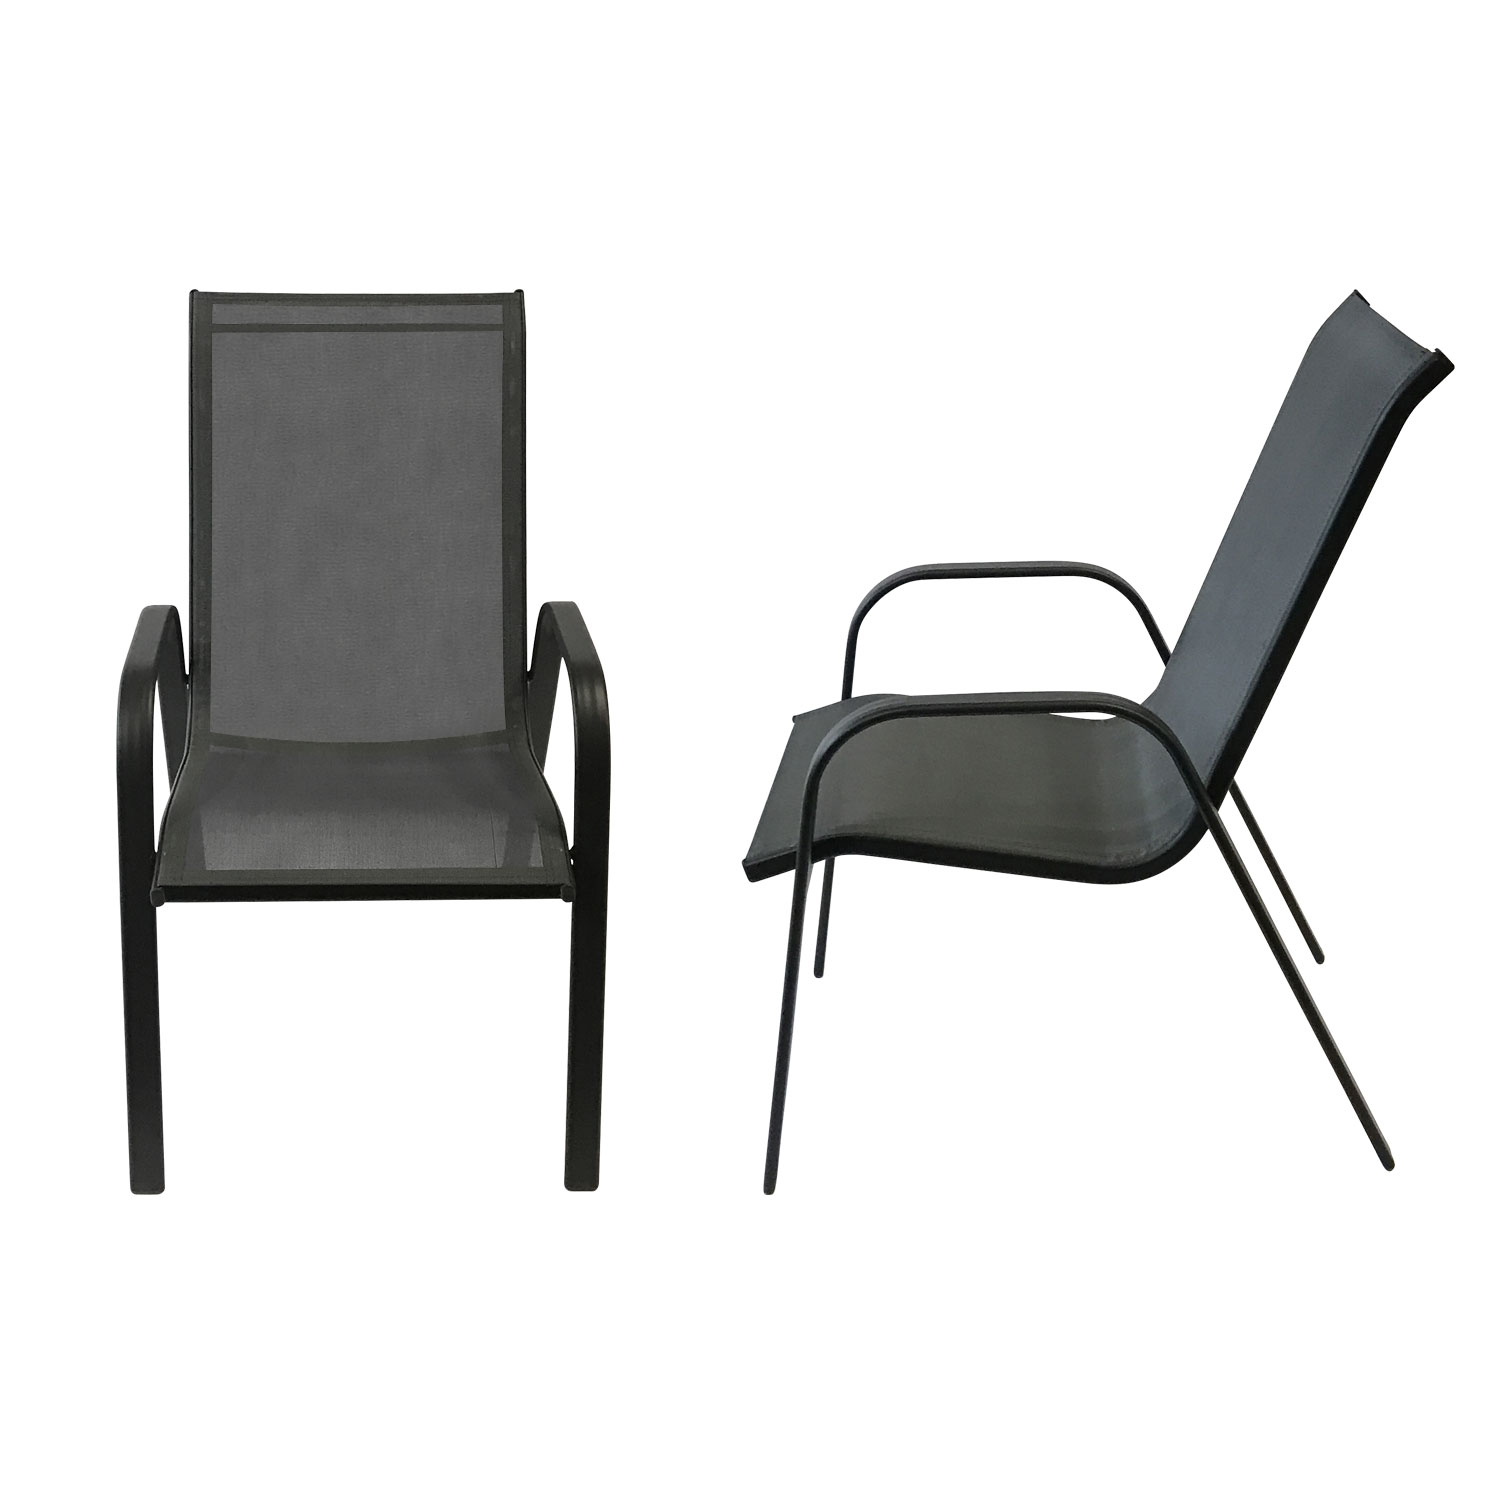 Conjunto de 4 cadeiras MARBELLA - alumínio cinzento antracite